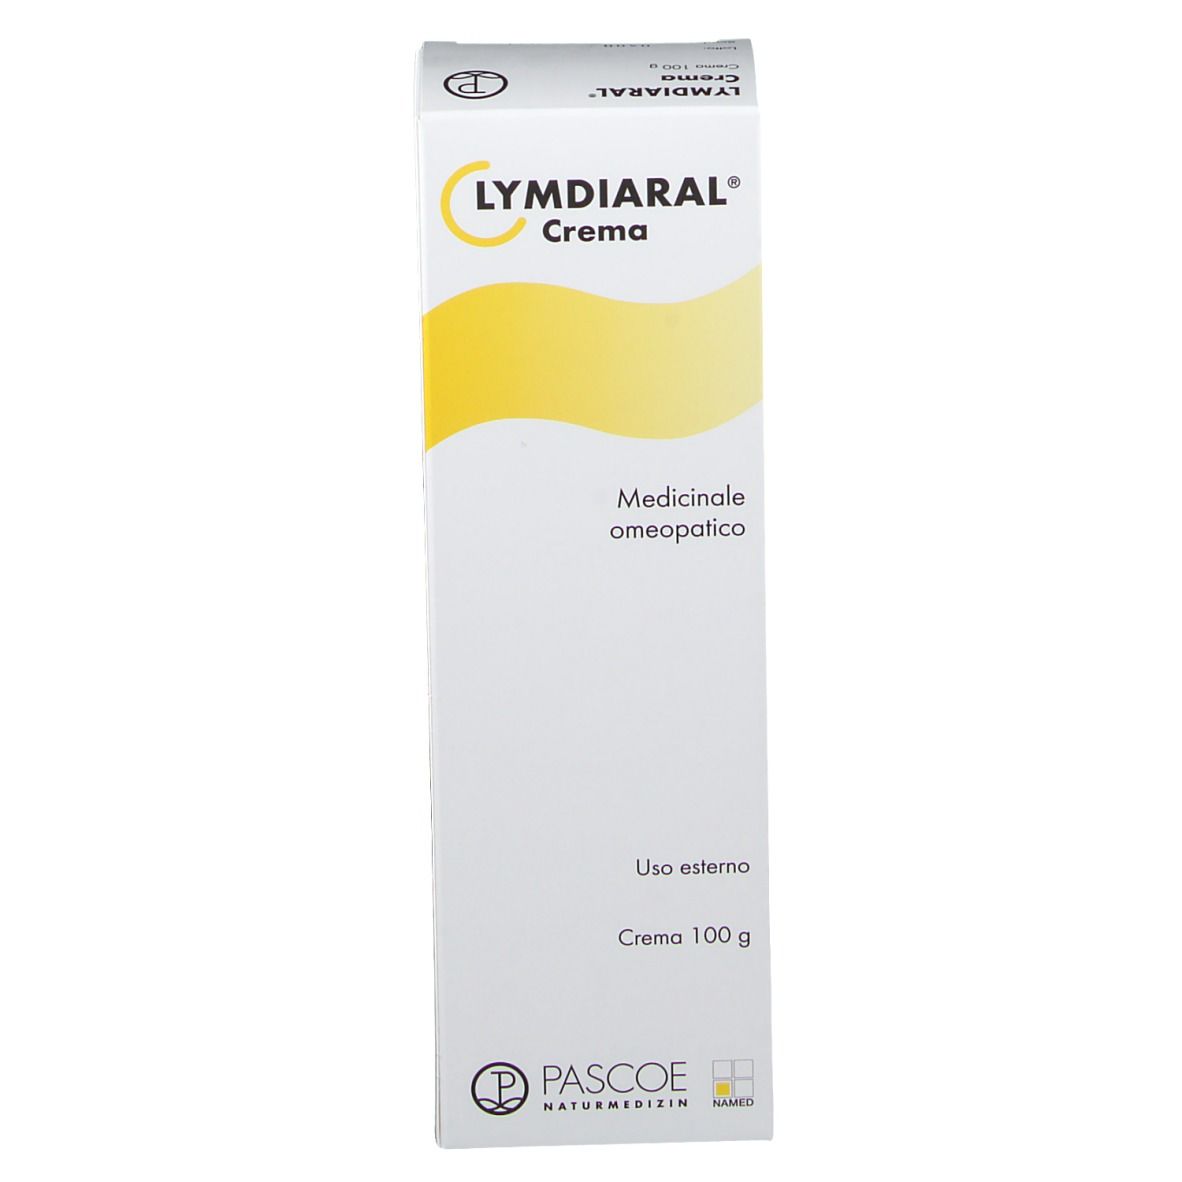 Lymdiaral® Crema